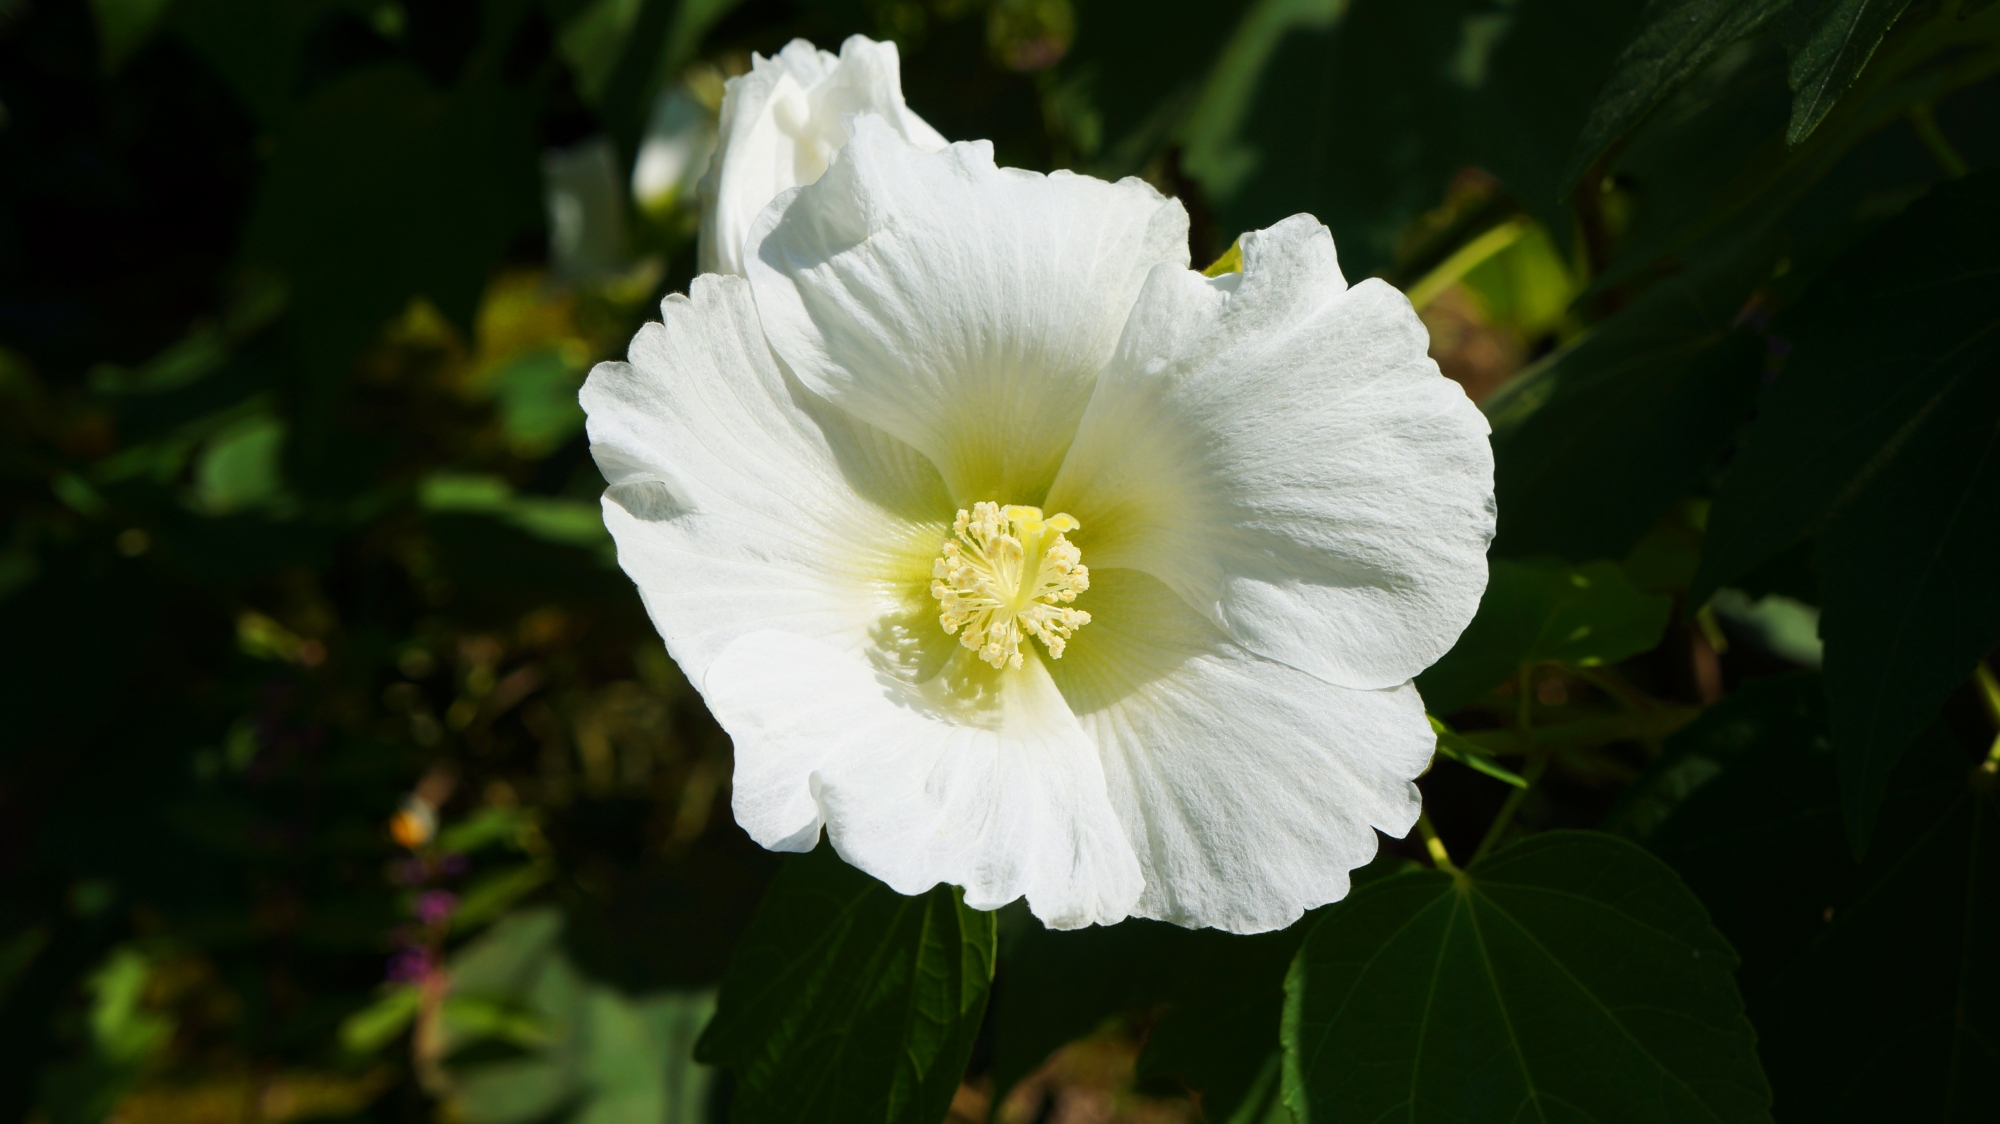 達磨寺の爽やかな白い芙蓉の花